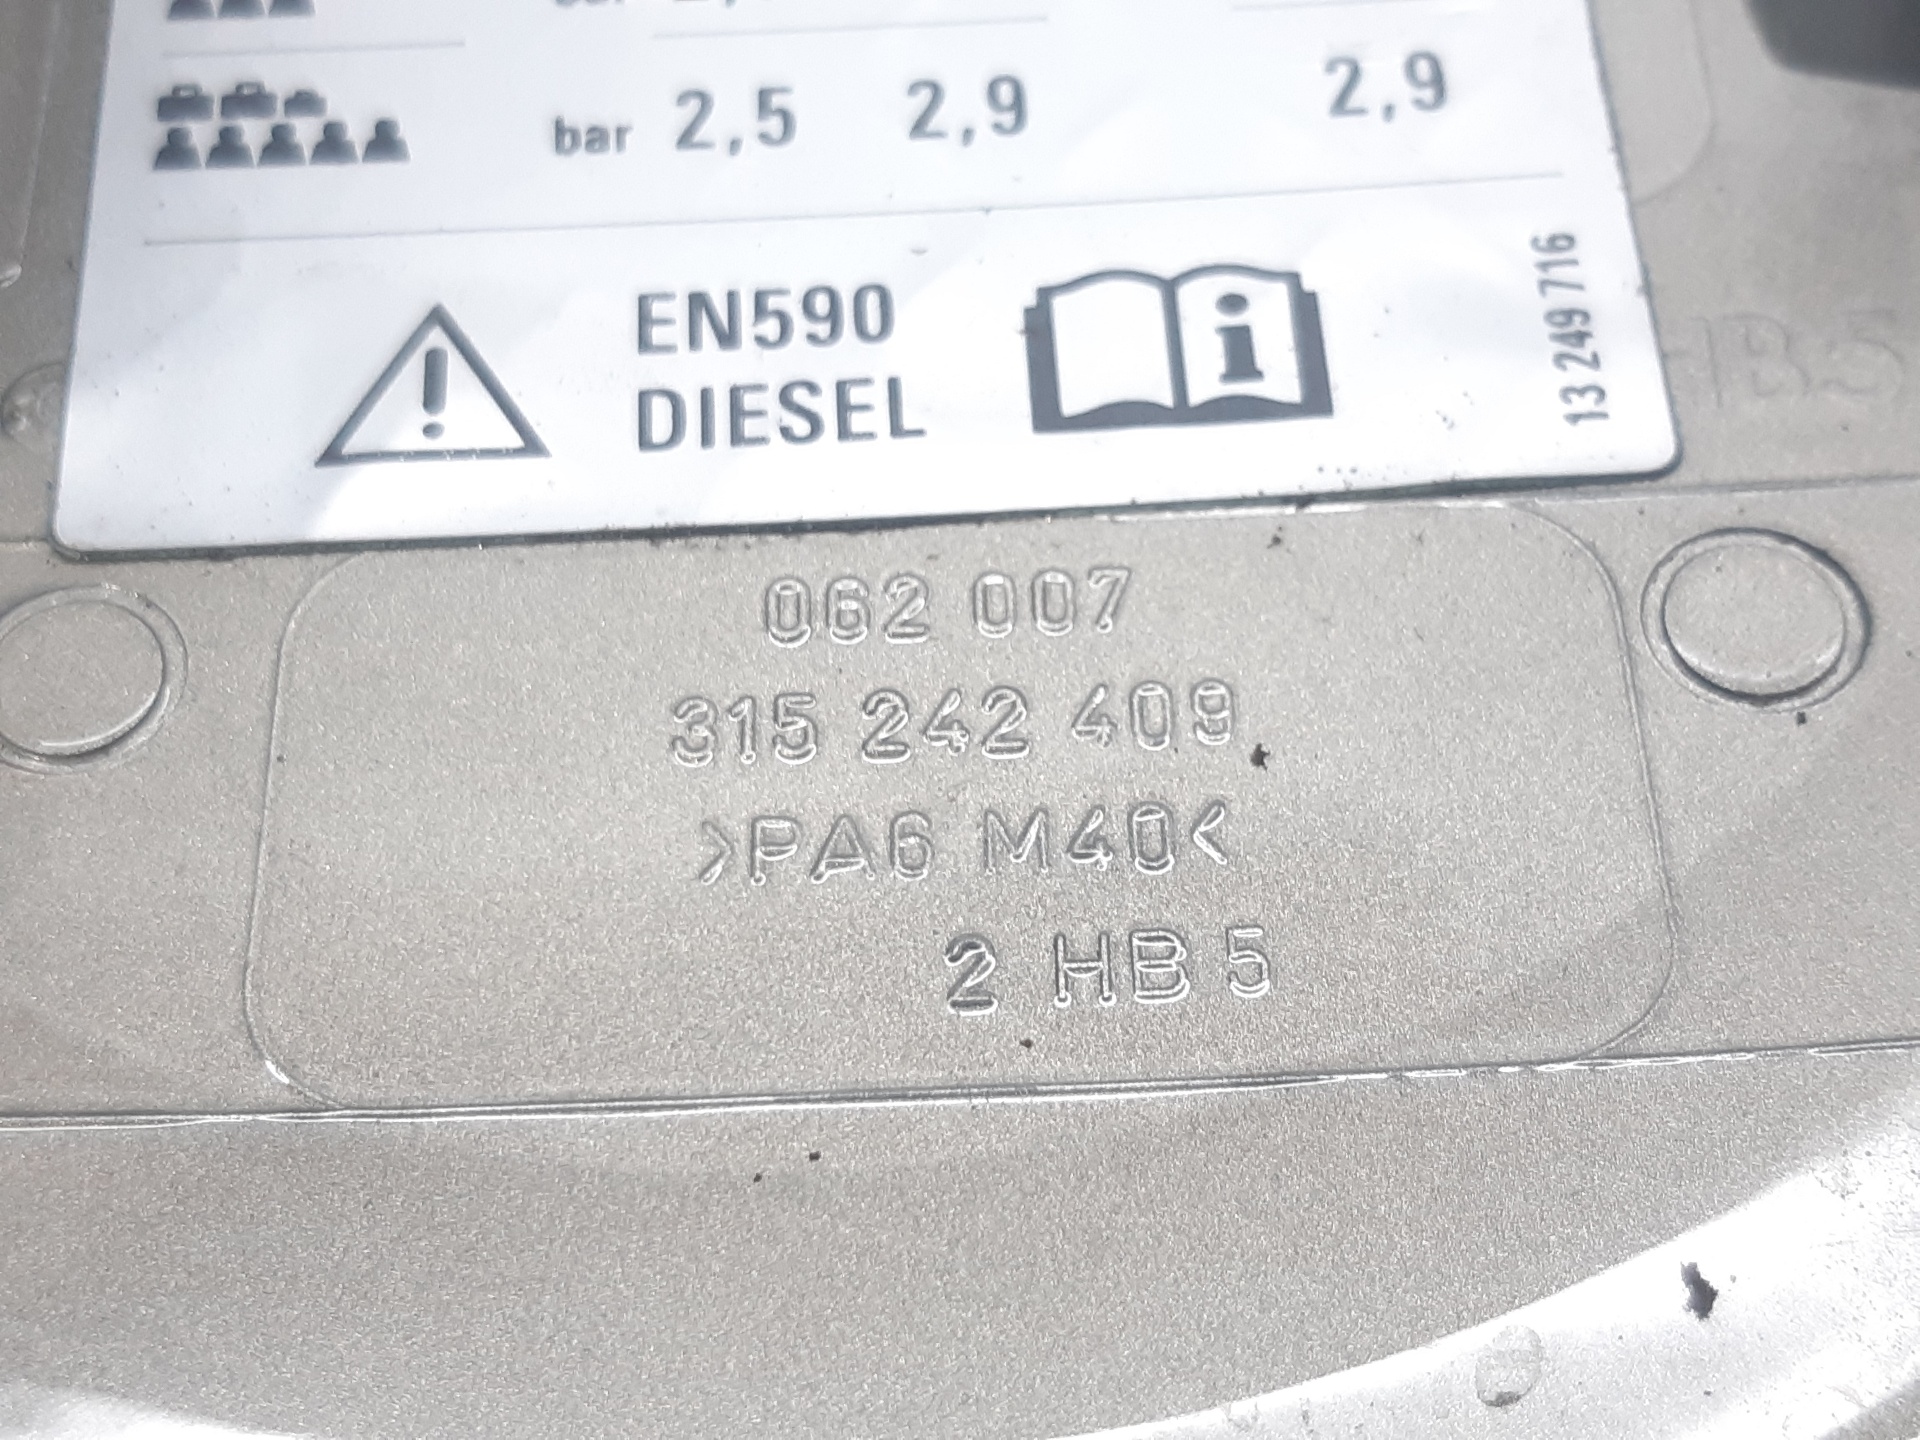 FIAT Astra J (2009-2020) Fuel tank cap 315242409 18766671